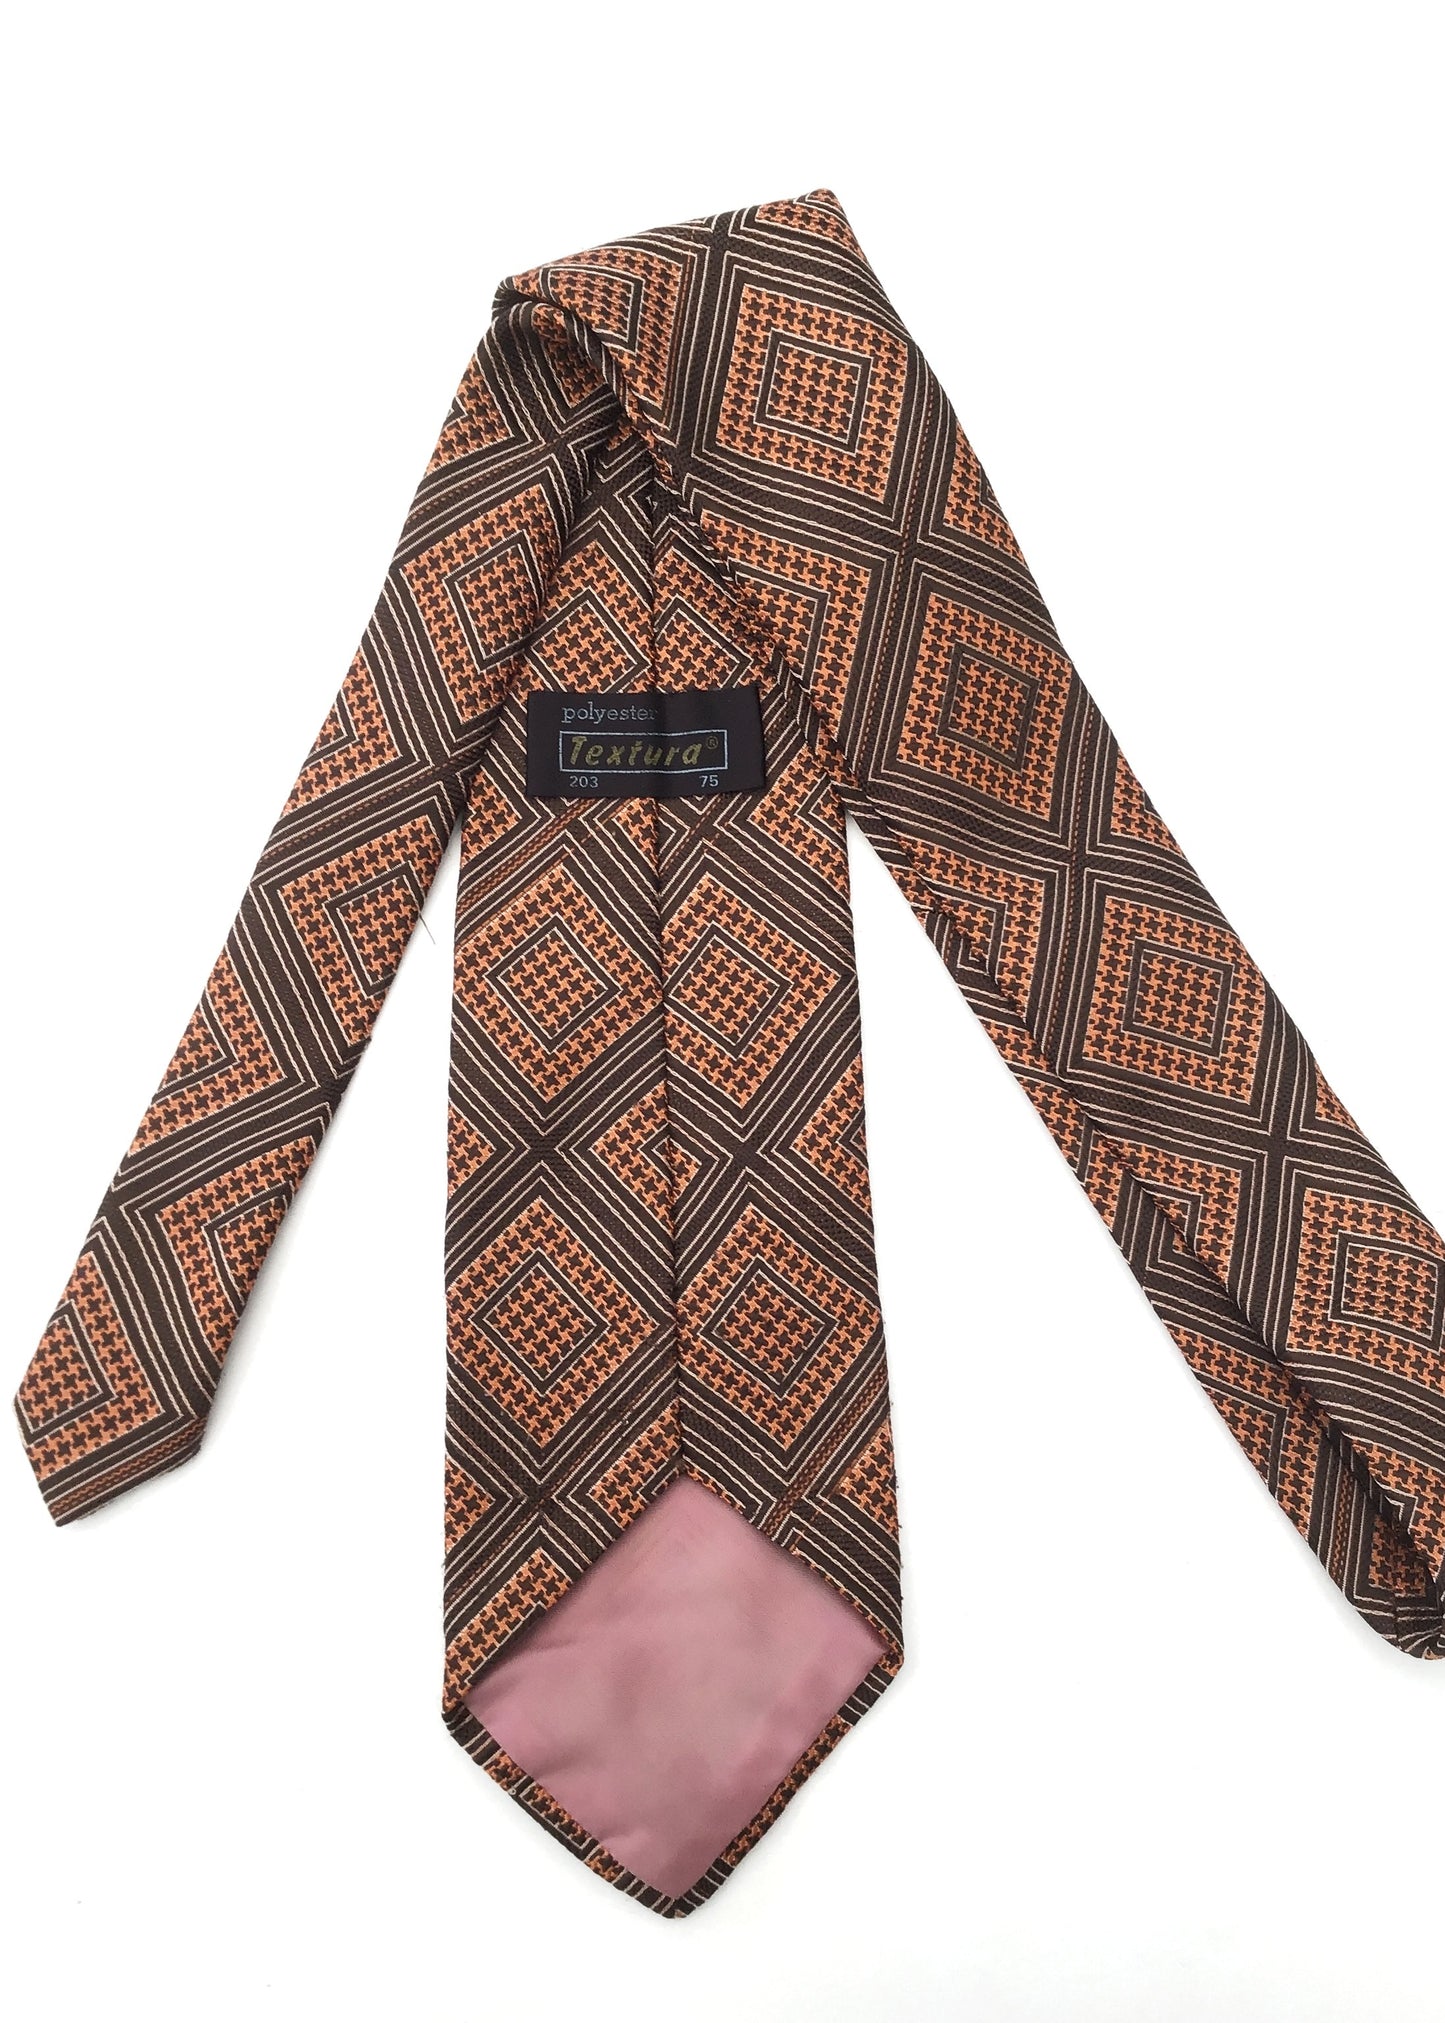 Vintage 70s Orange and Brown Diamond Pattern Textured Wide Neck Tie • Kipper Tie